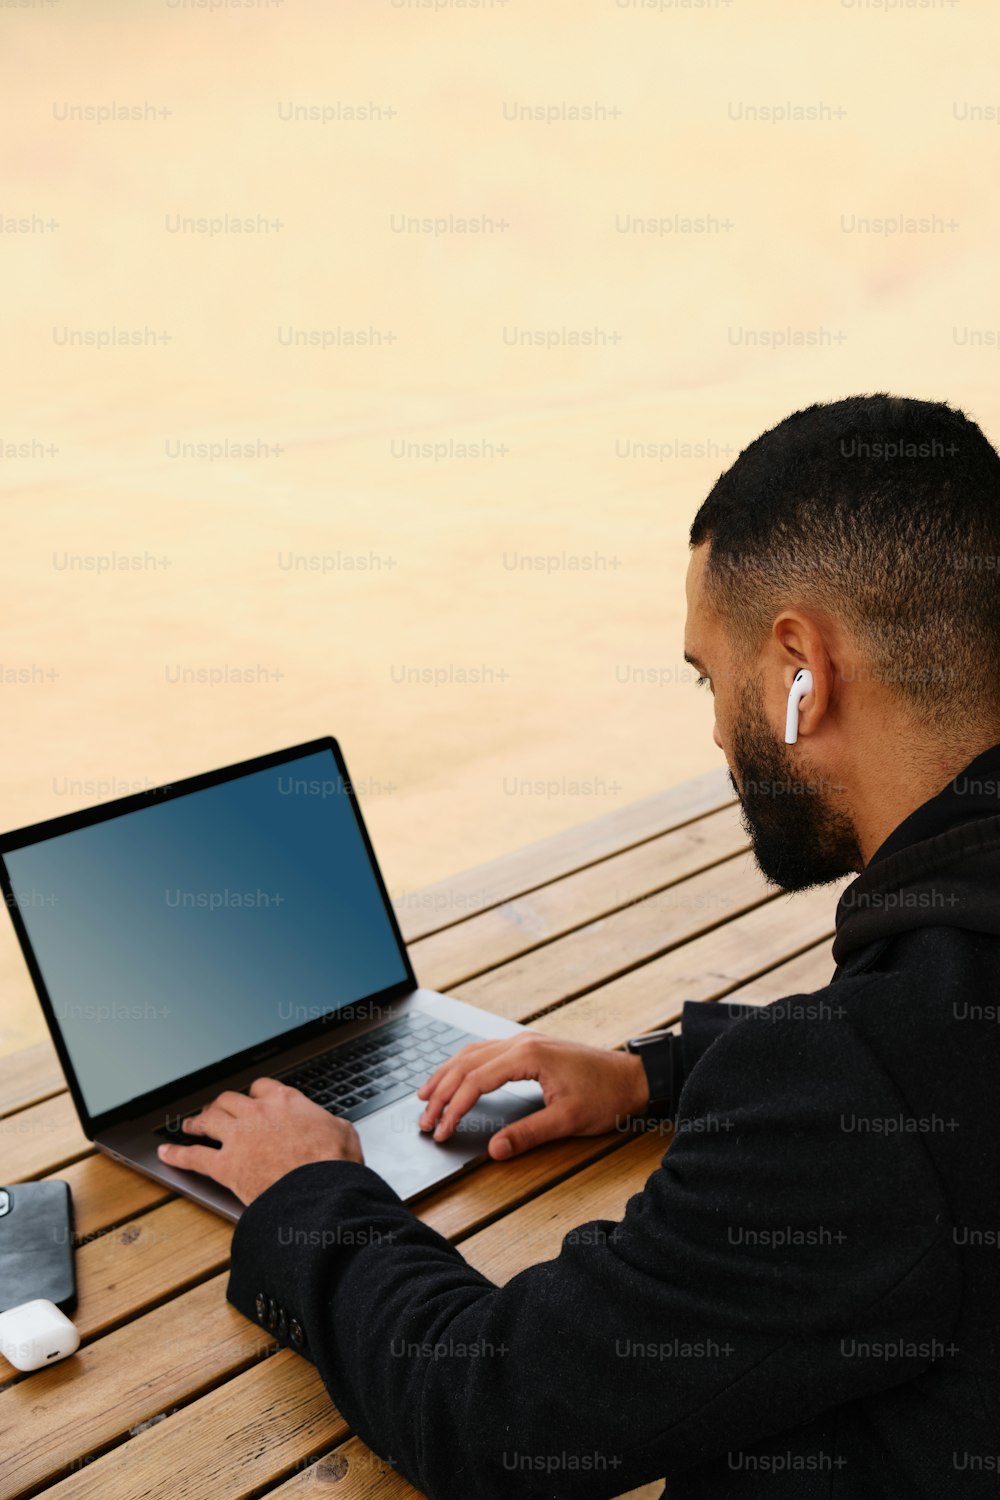 Ein Mann sitzt auf einer Bank und benutzt einen Laptop